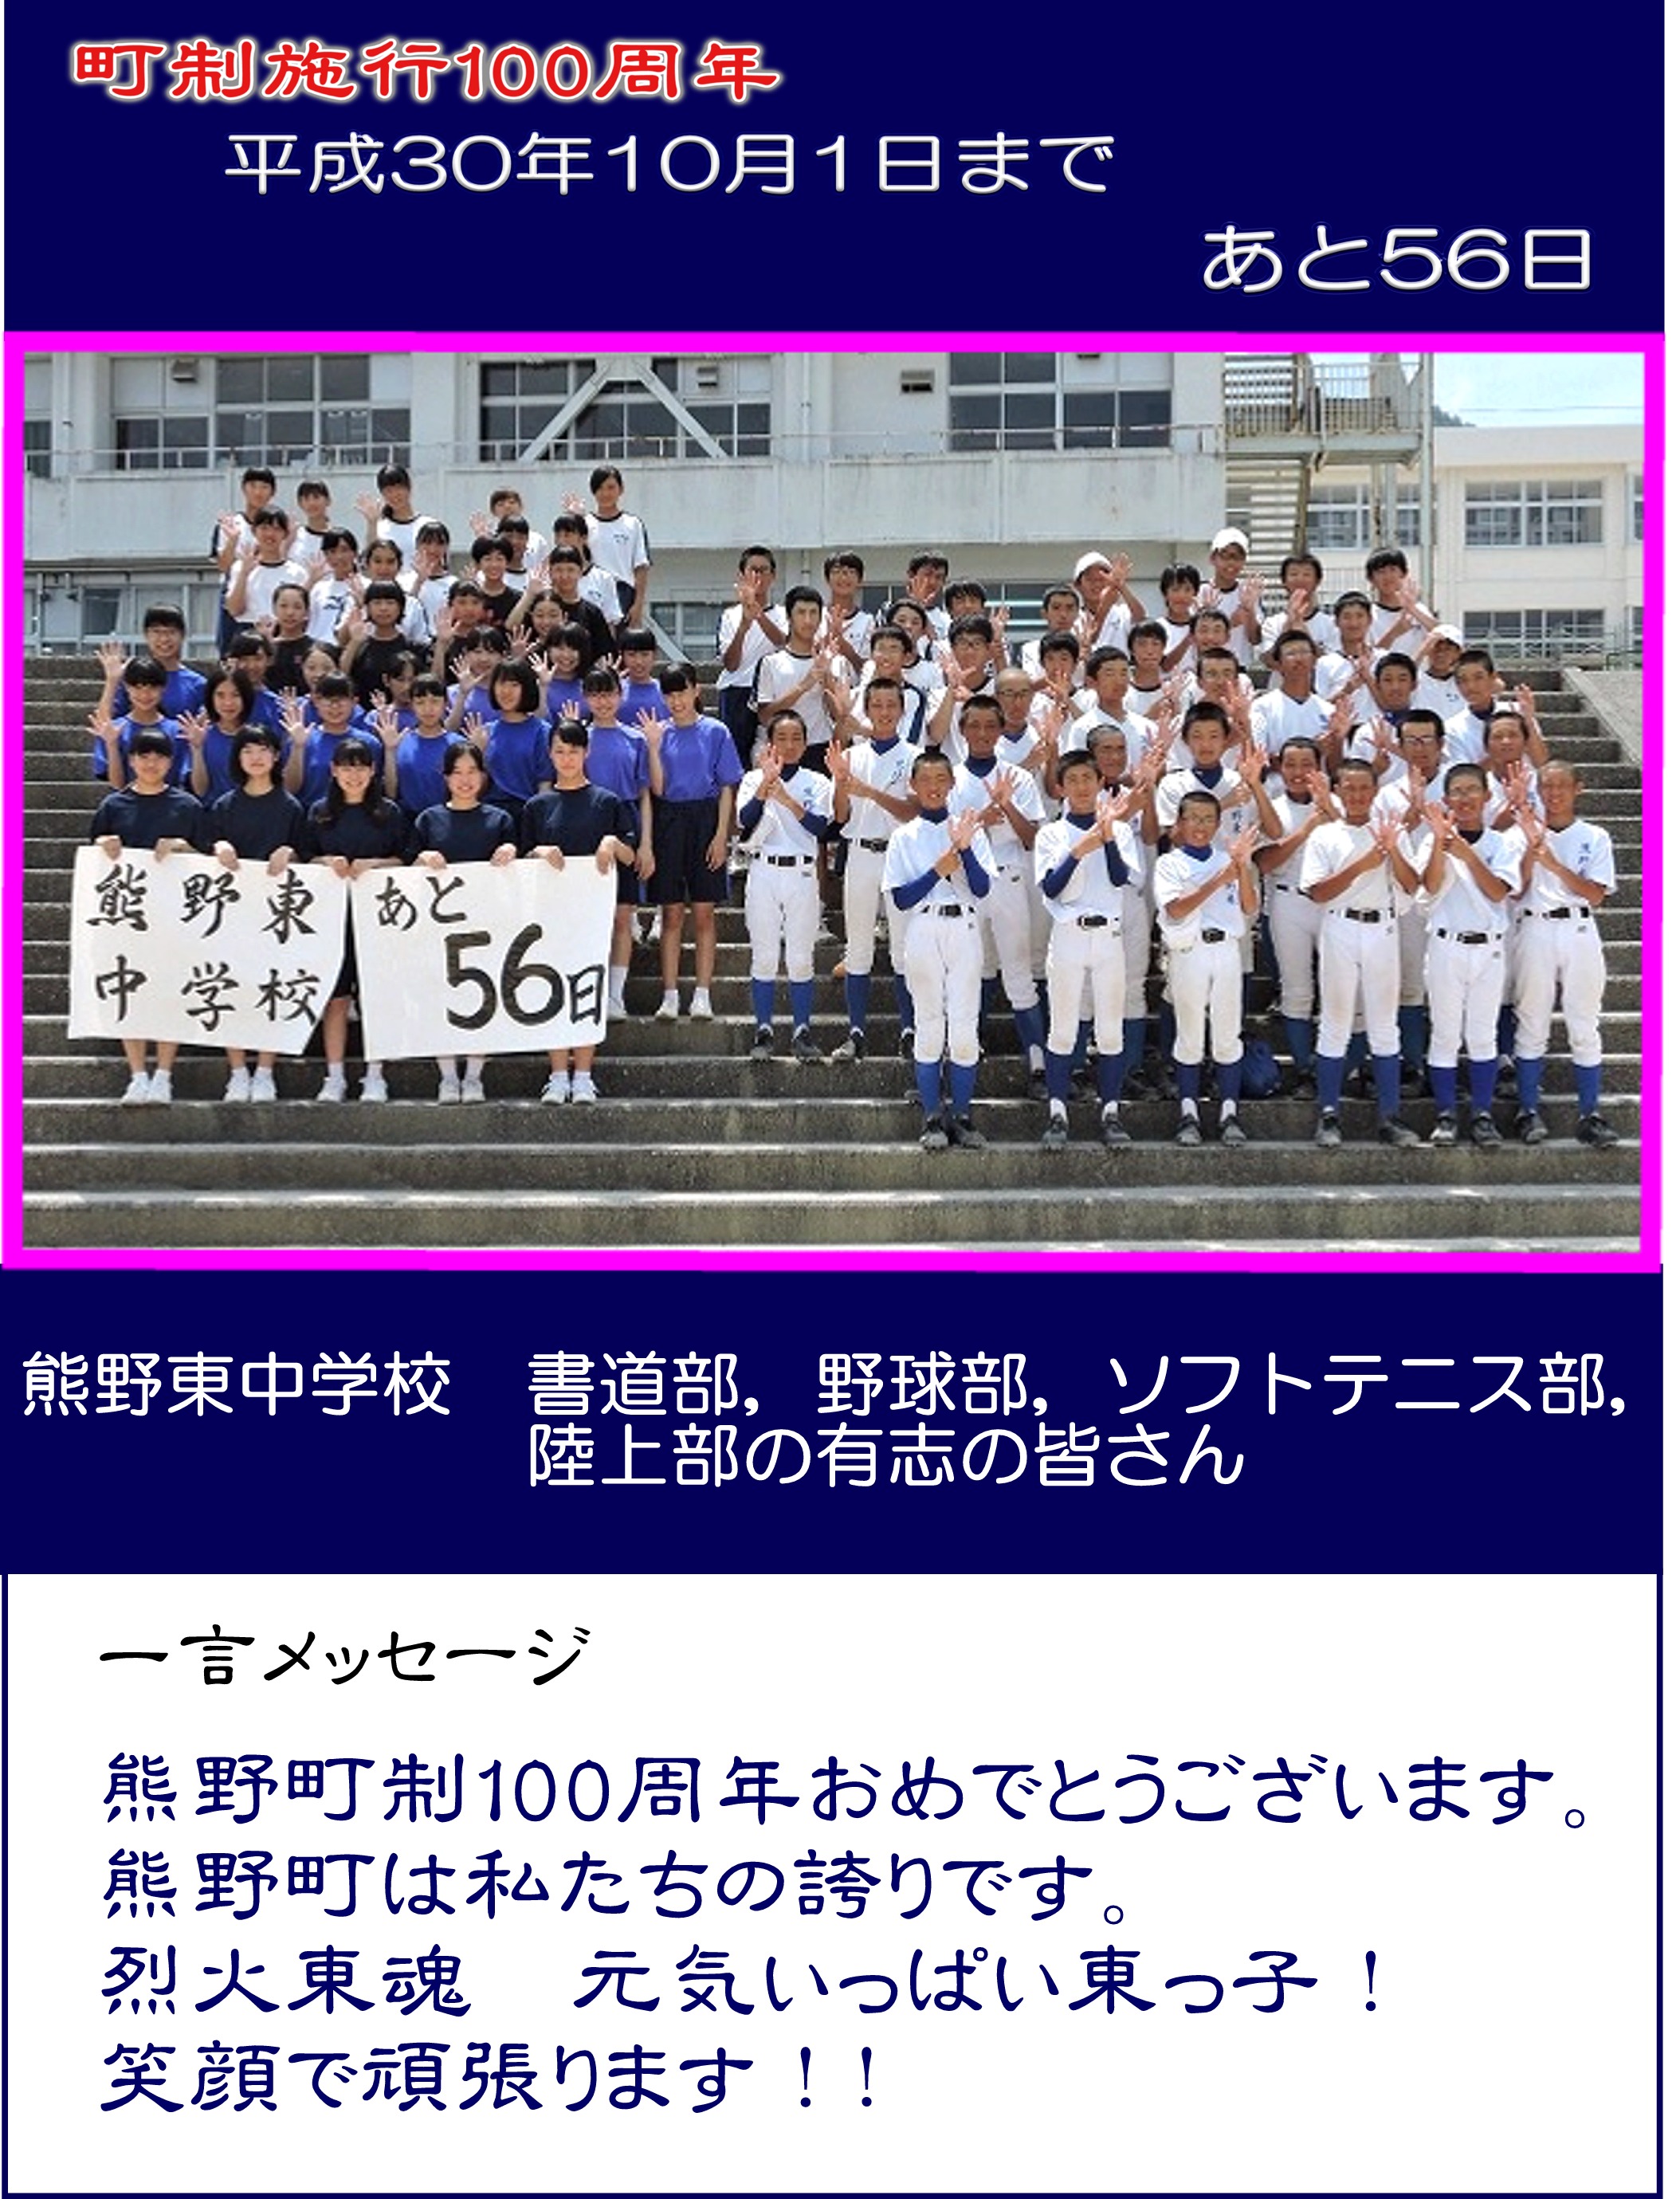 カウントダウン写真熊野東中学校書道部野球部ソフトテニス部陸上部有志56